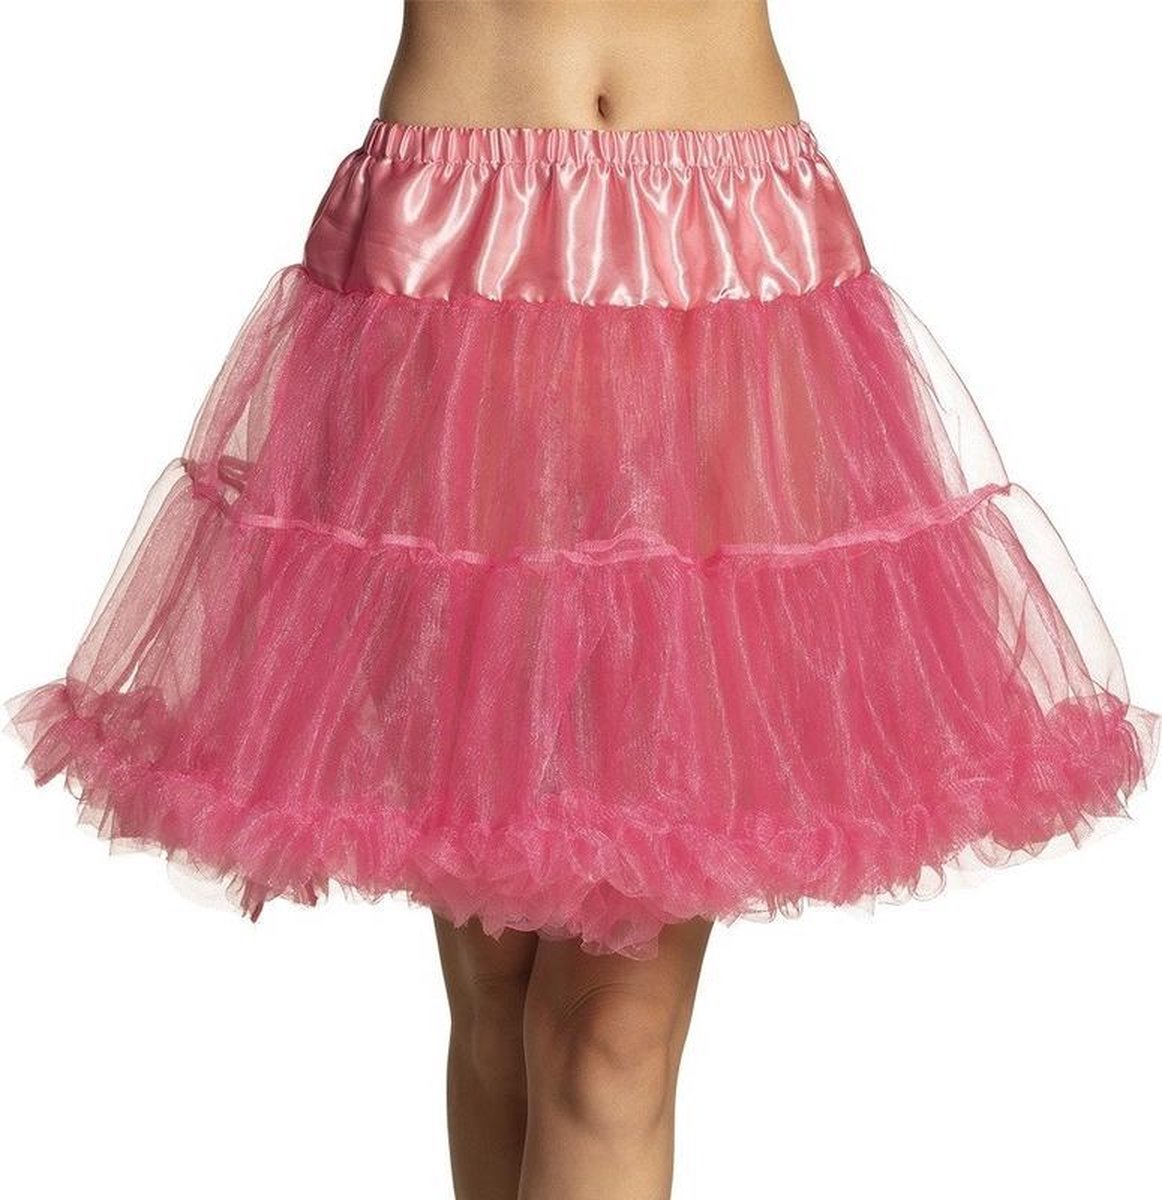 Roze verkleed petticoat rok voor dames 45 cm - roze verkleedkleding rokken